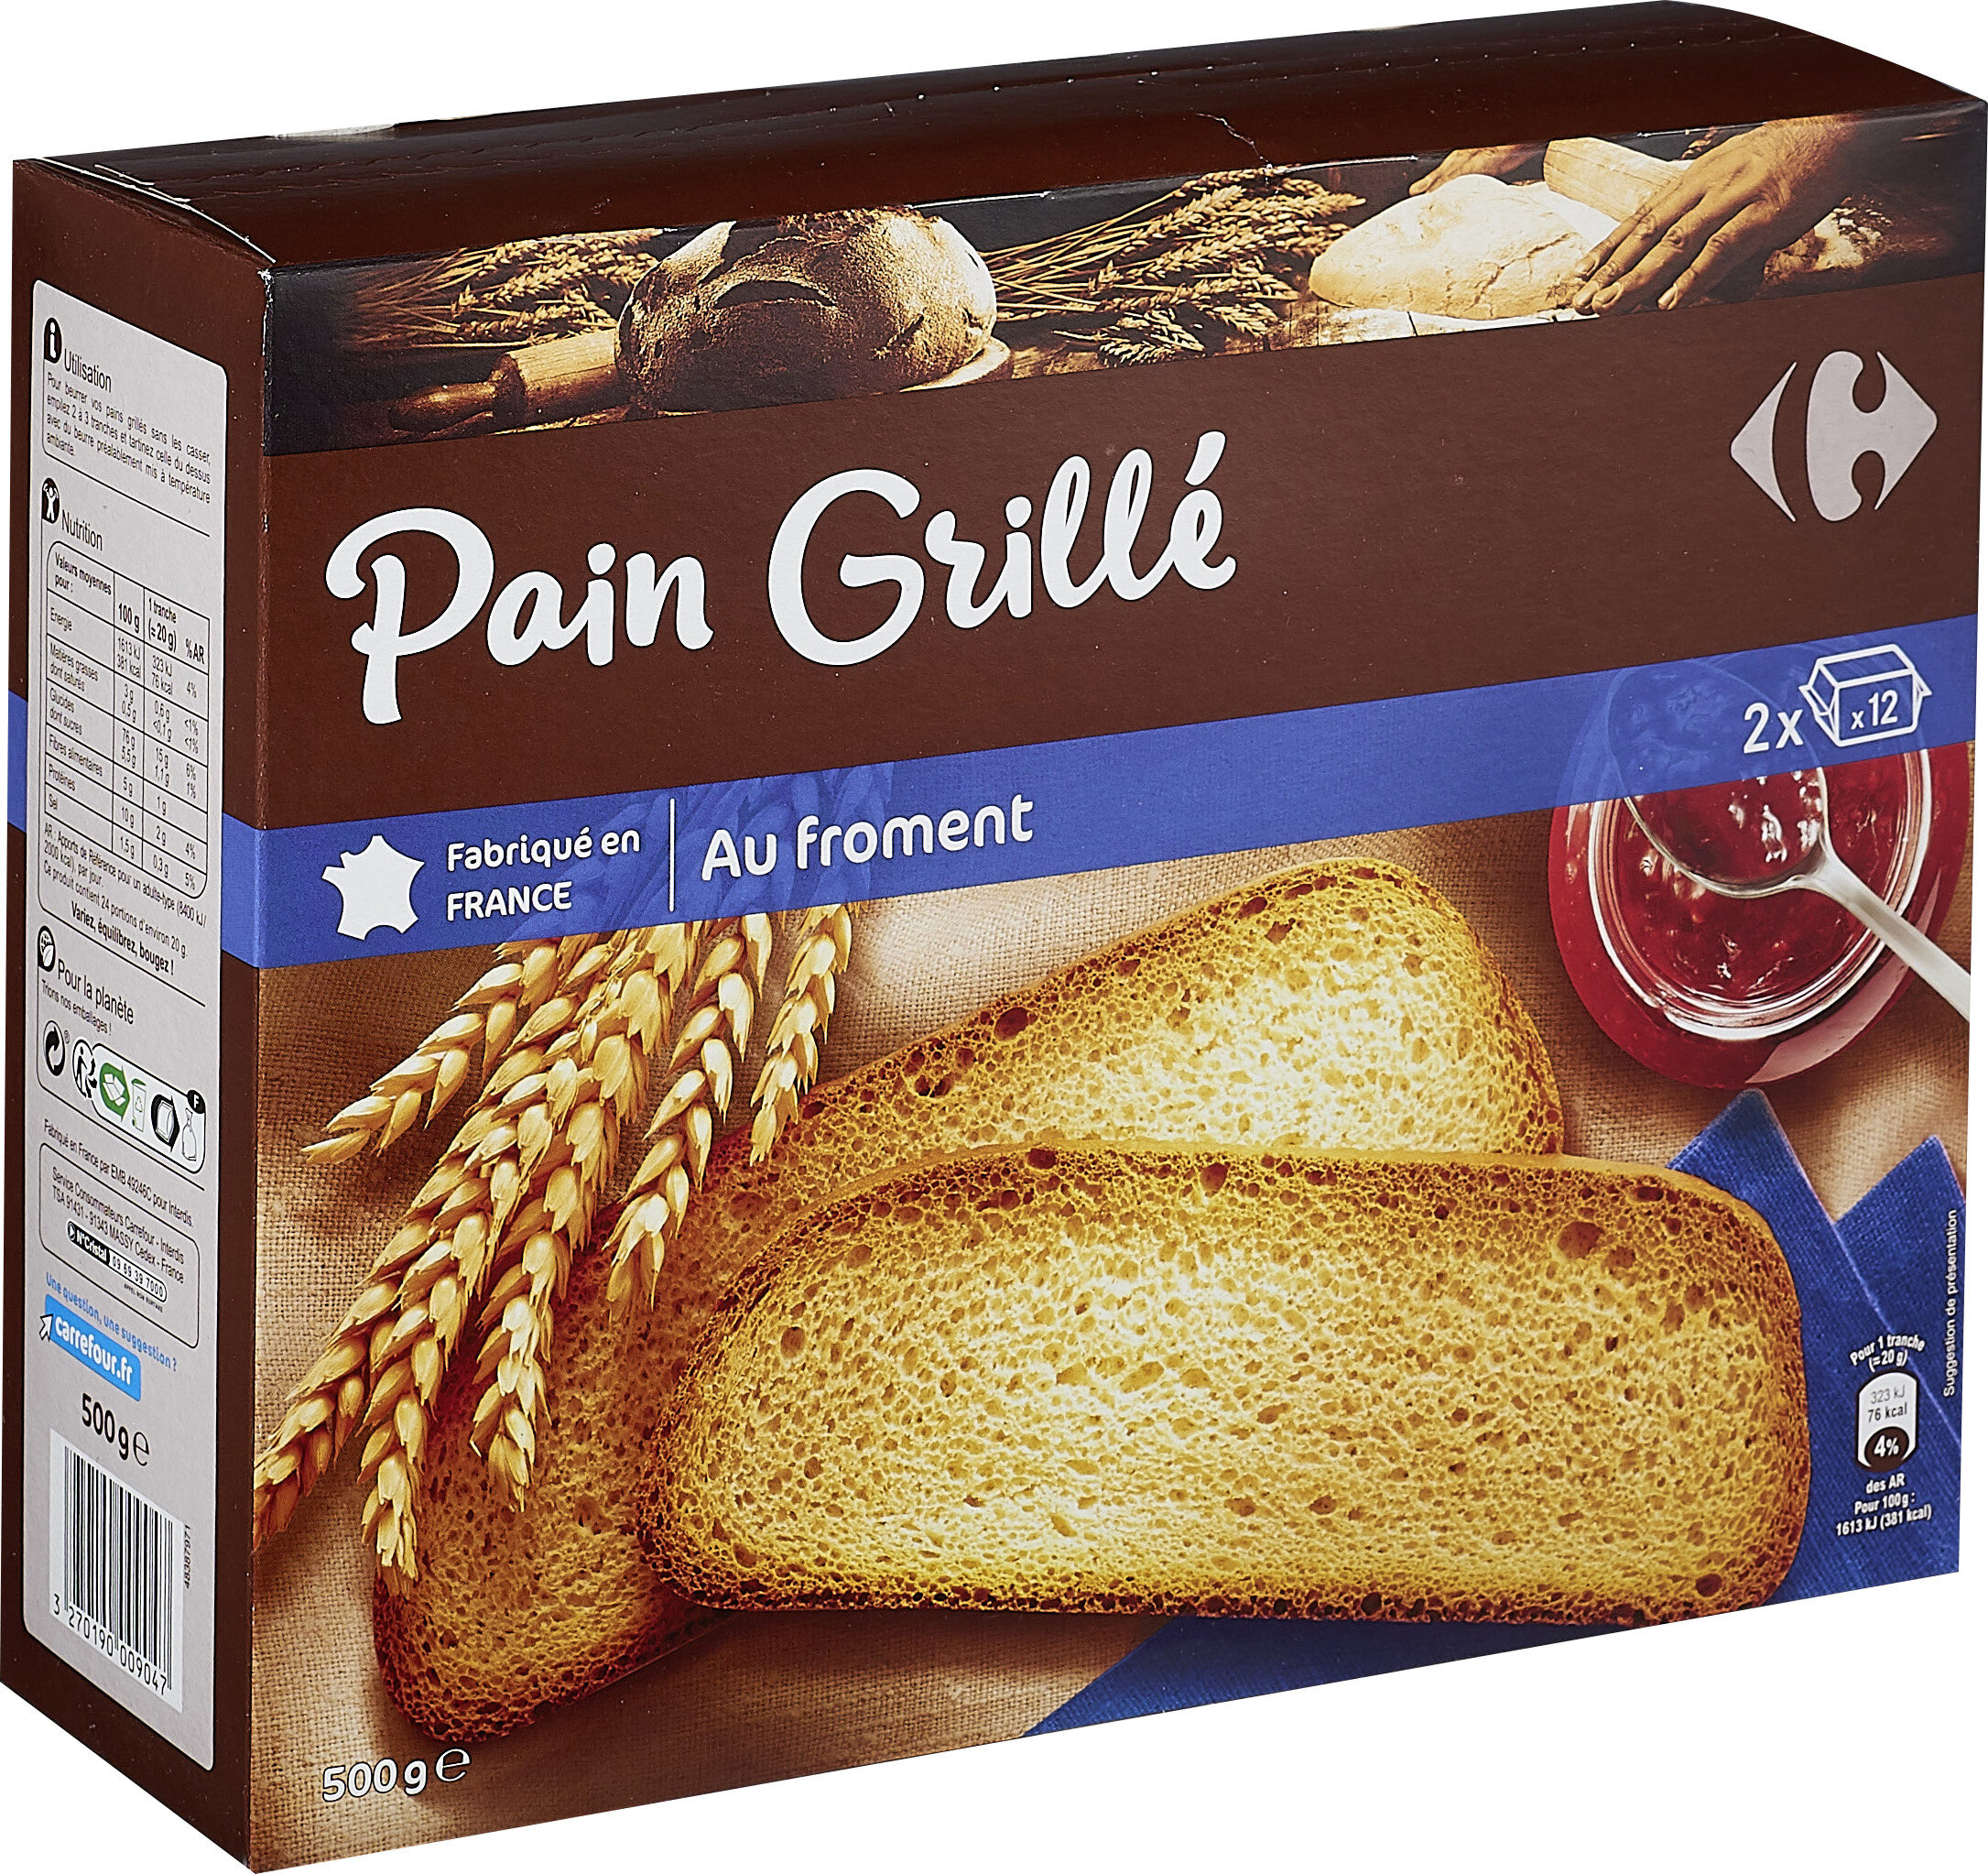 Pain grillé Au froment - Product - fr